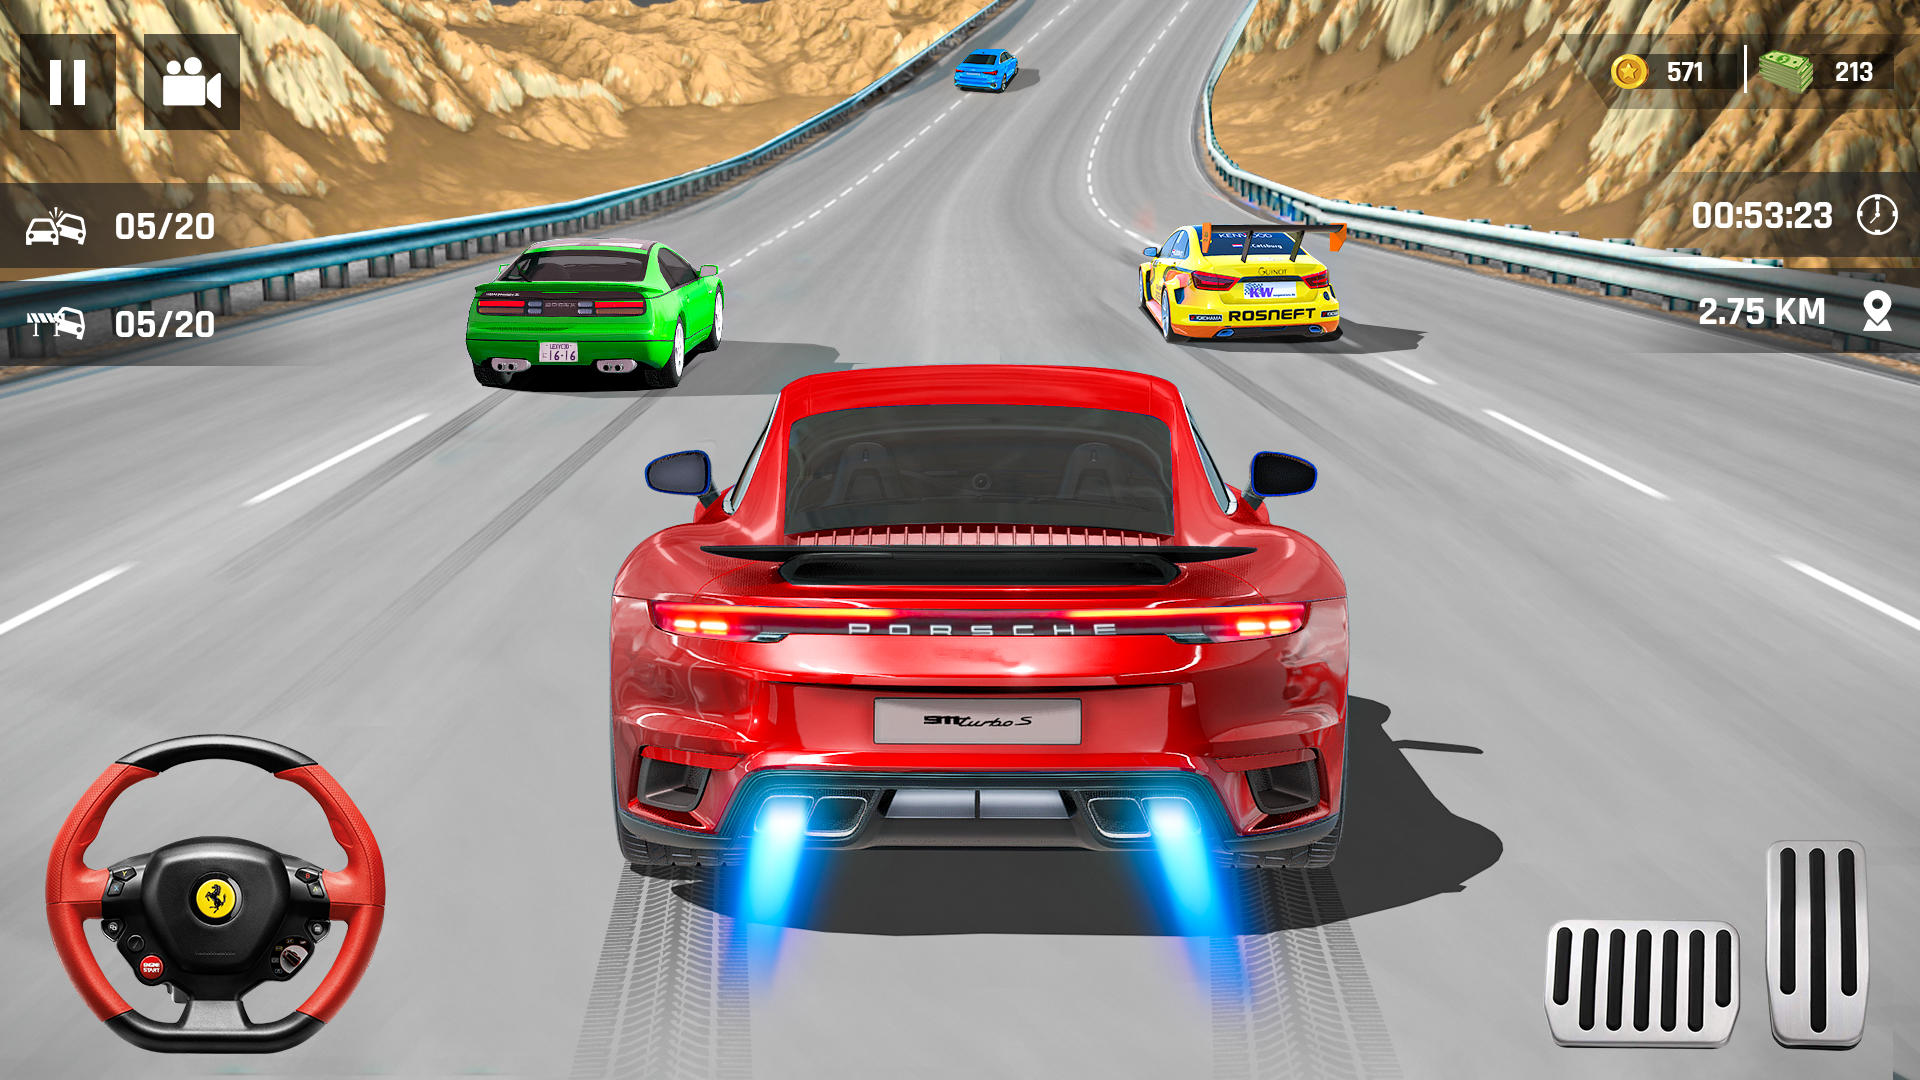 Real Speed Car -jogo de carros APK (Android Game) - Baixar Grátis